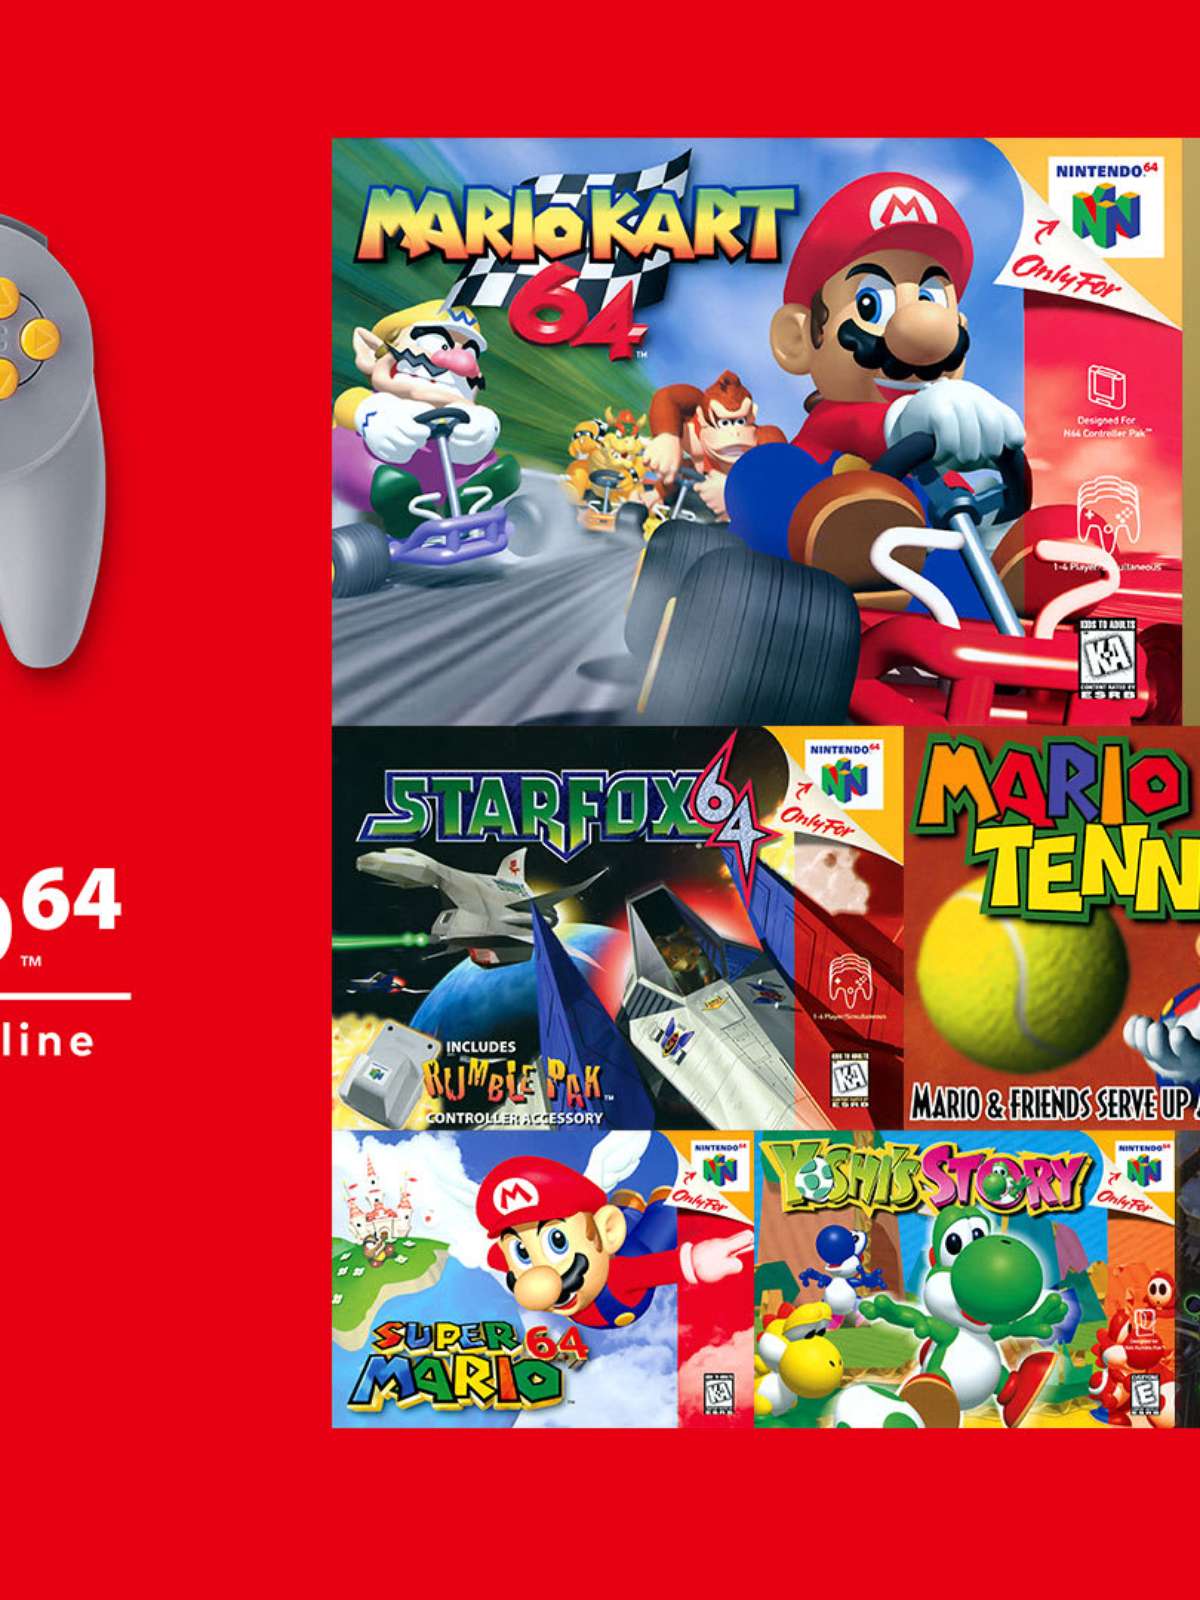 Super Mario 64 para PC recebe mod com versão HD de Mario – Tecnoblog